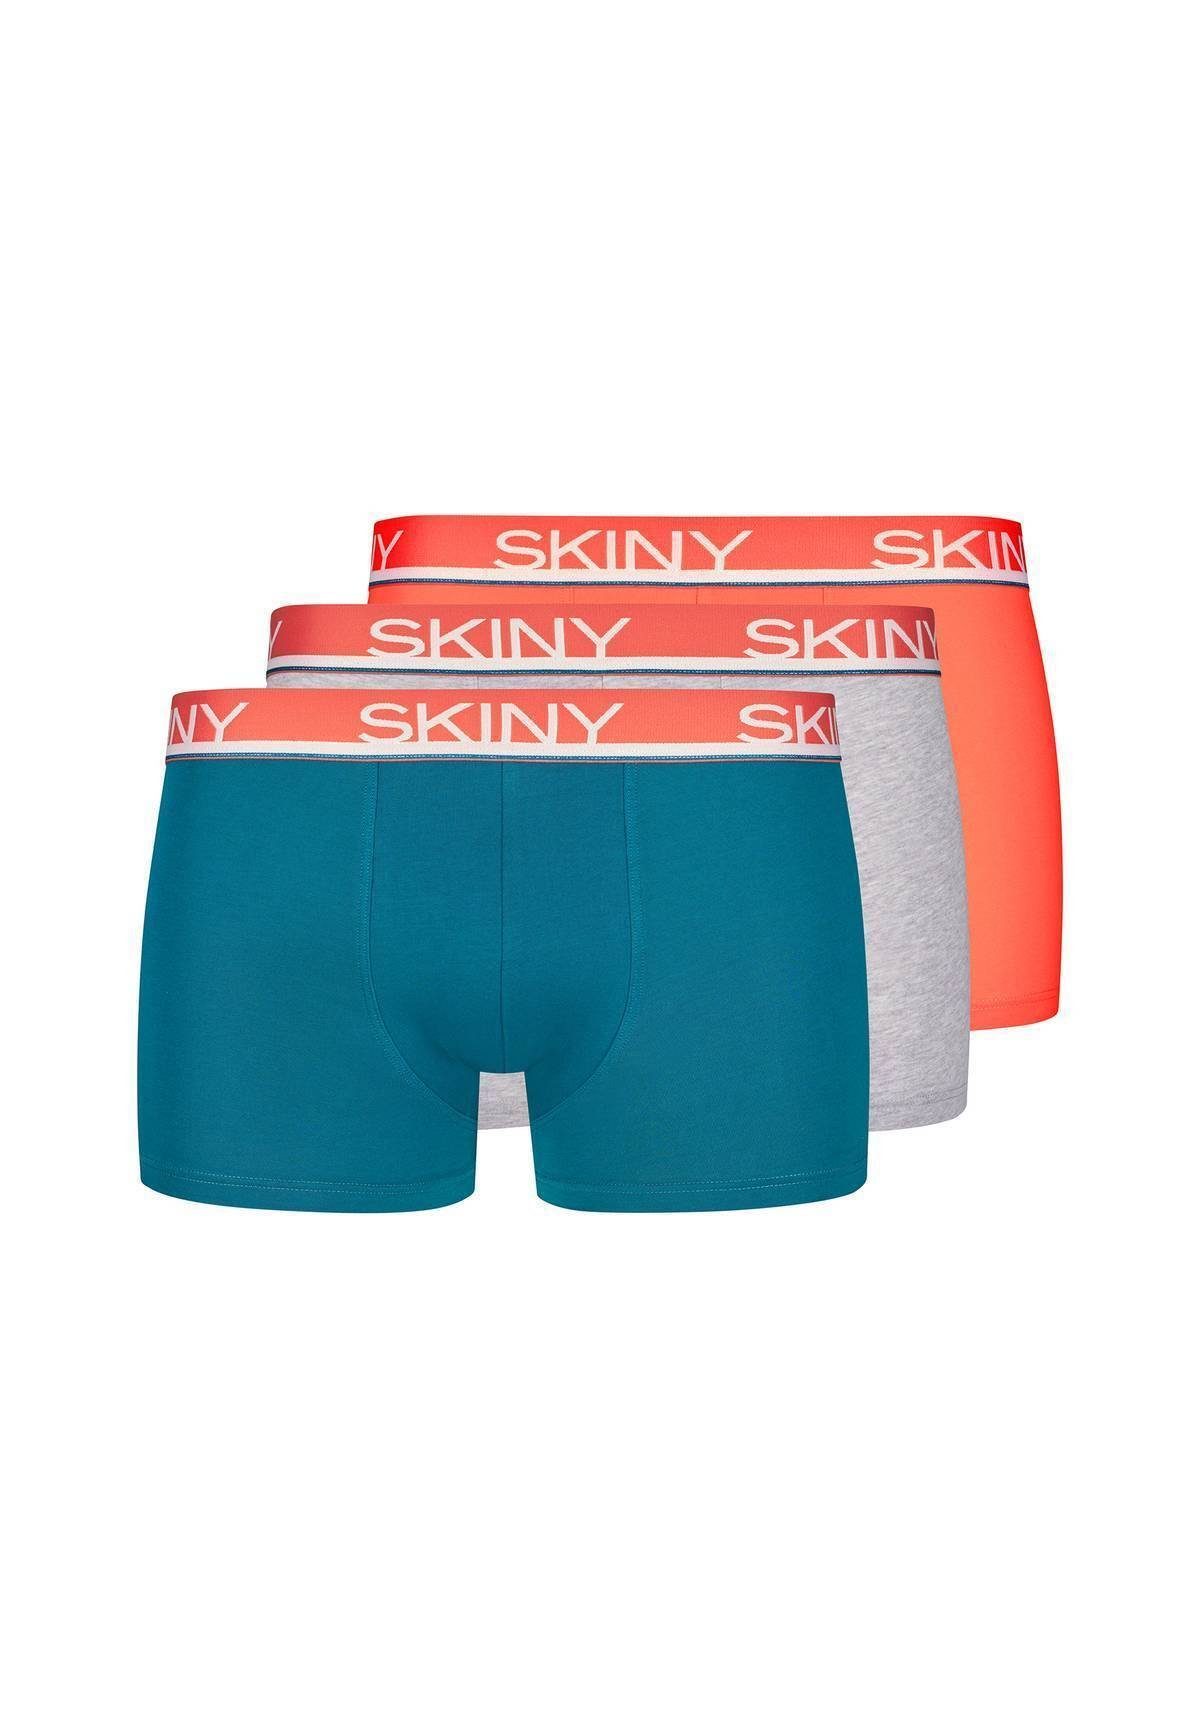 Skiny Boxer Herren Boxer Shorts 3er Pack - Trunks, Pants Petrol/Grau/Orange